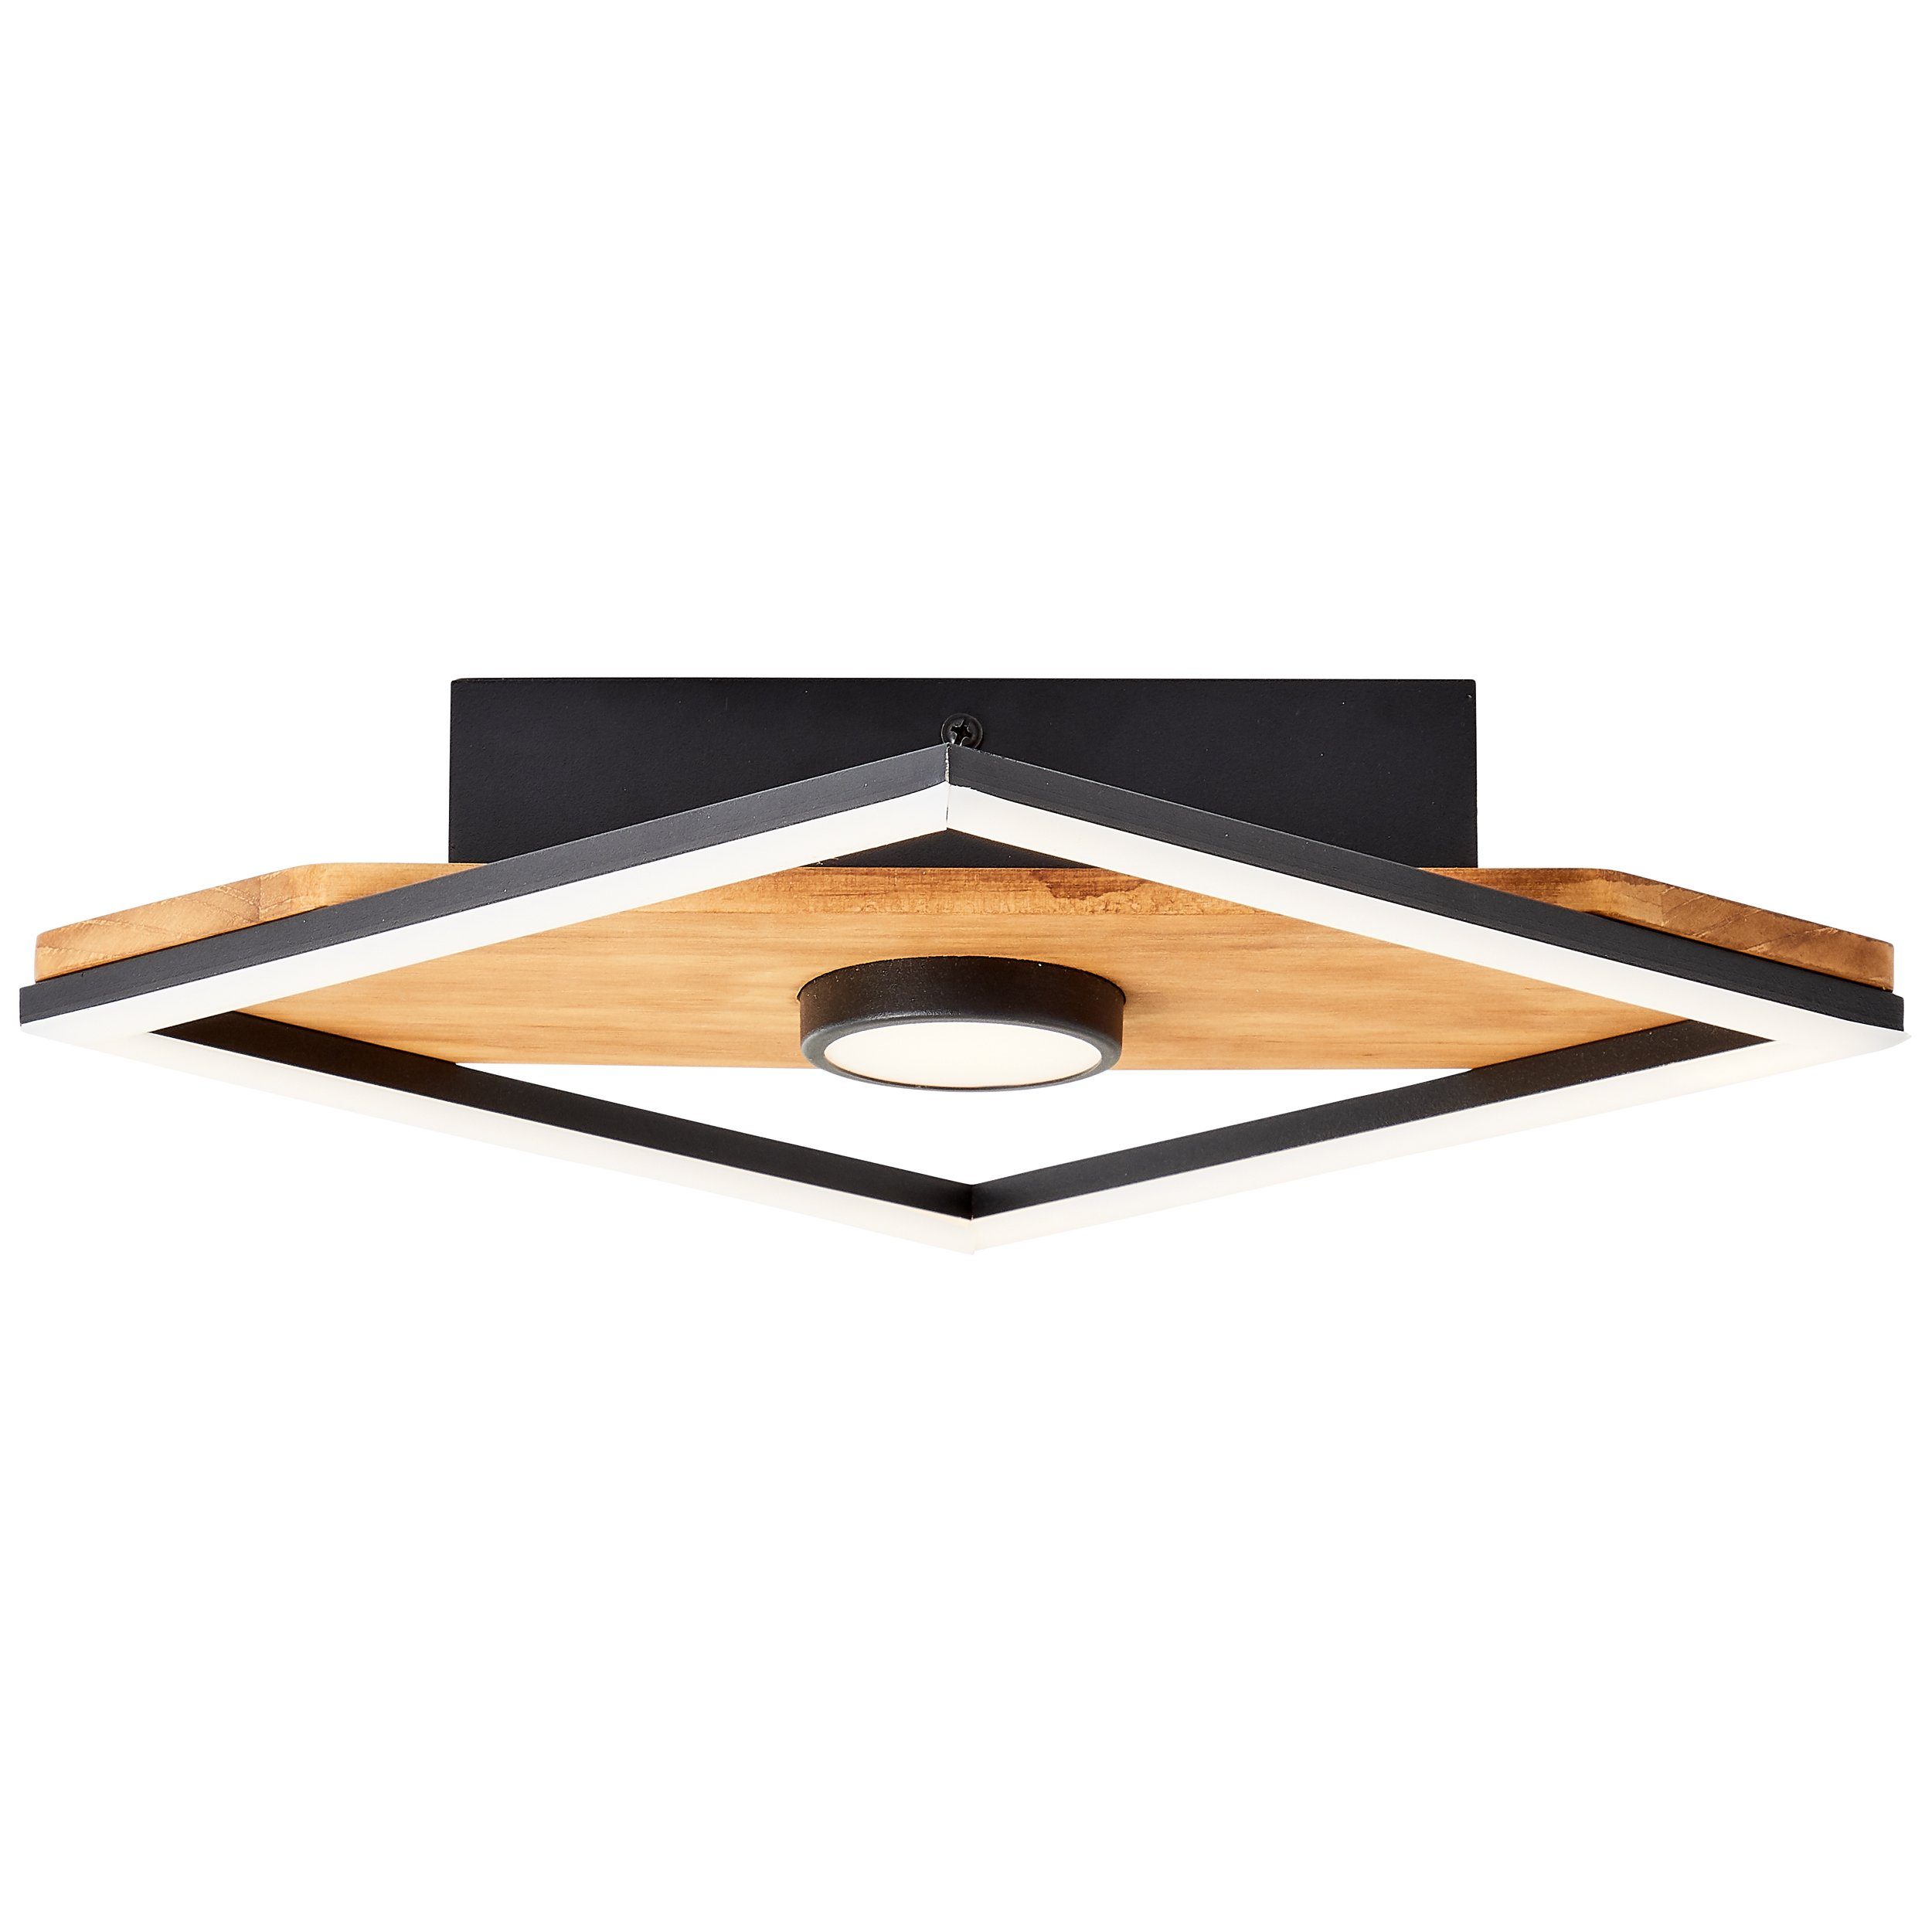 Brilliant Deckenleuchte Woodbridge, Woodbridge LED Deckenleuchte 25x25cm holz/schwarz, Holz/Metall/Kunstst | Deckenlampen